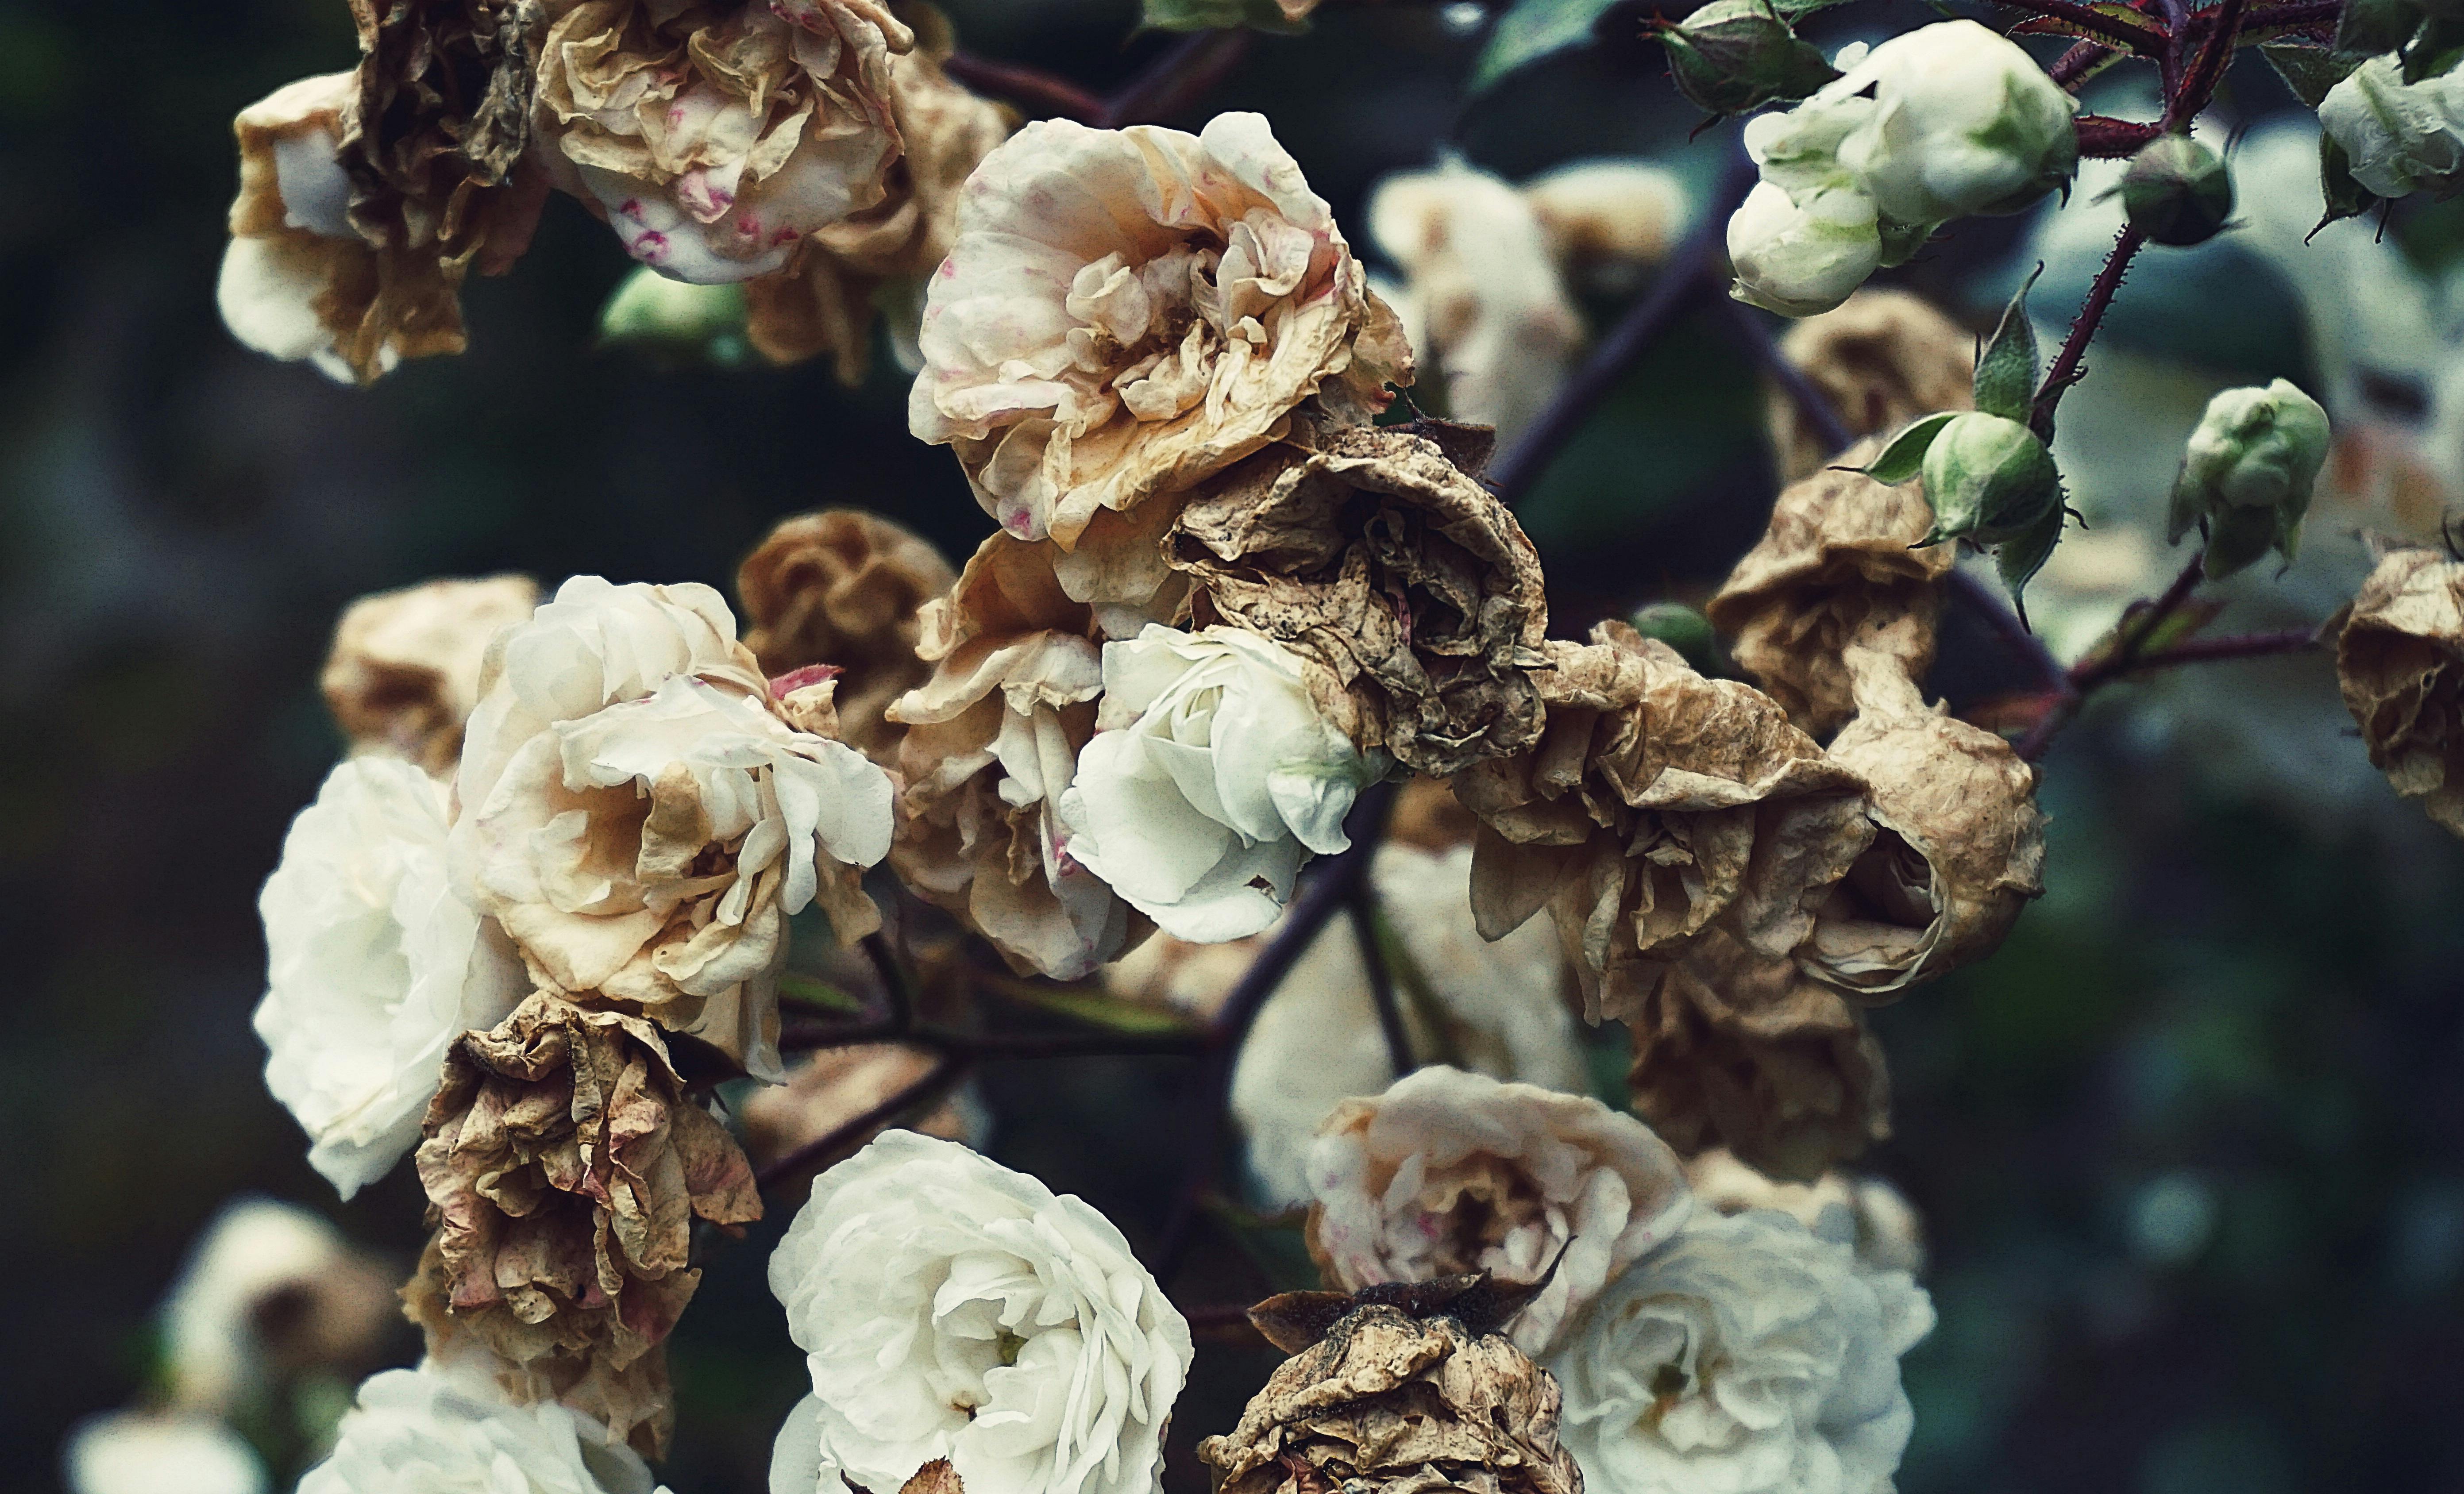 白色和棕色花瓣的花朵特写摄影 免费素材图片